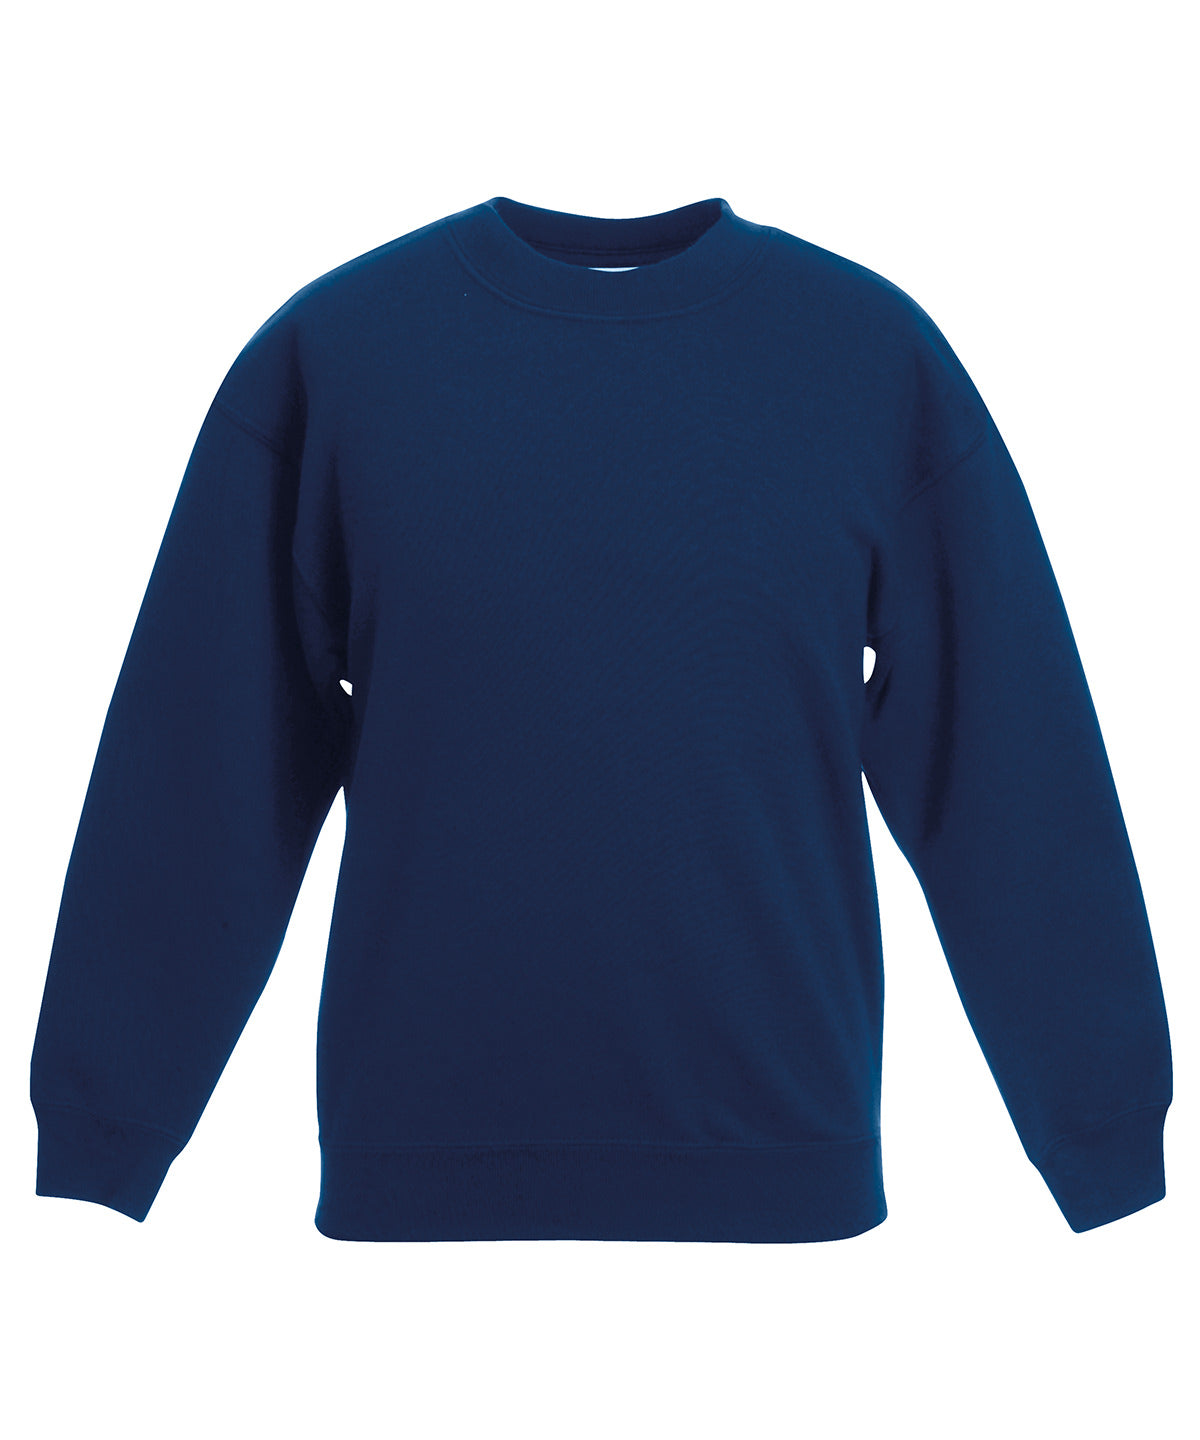 Personalised Sweatshirts - Black Fruit of the Loom Kids classic set-in sweatshirt